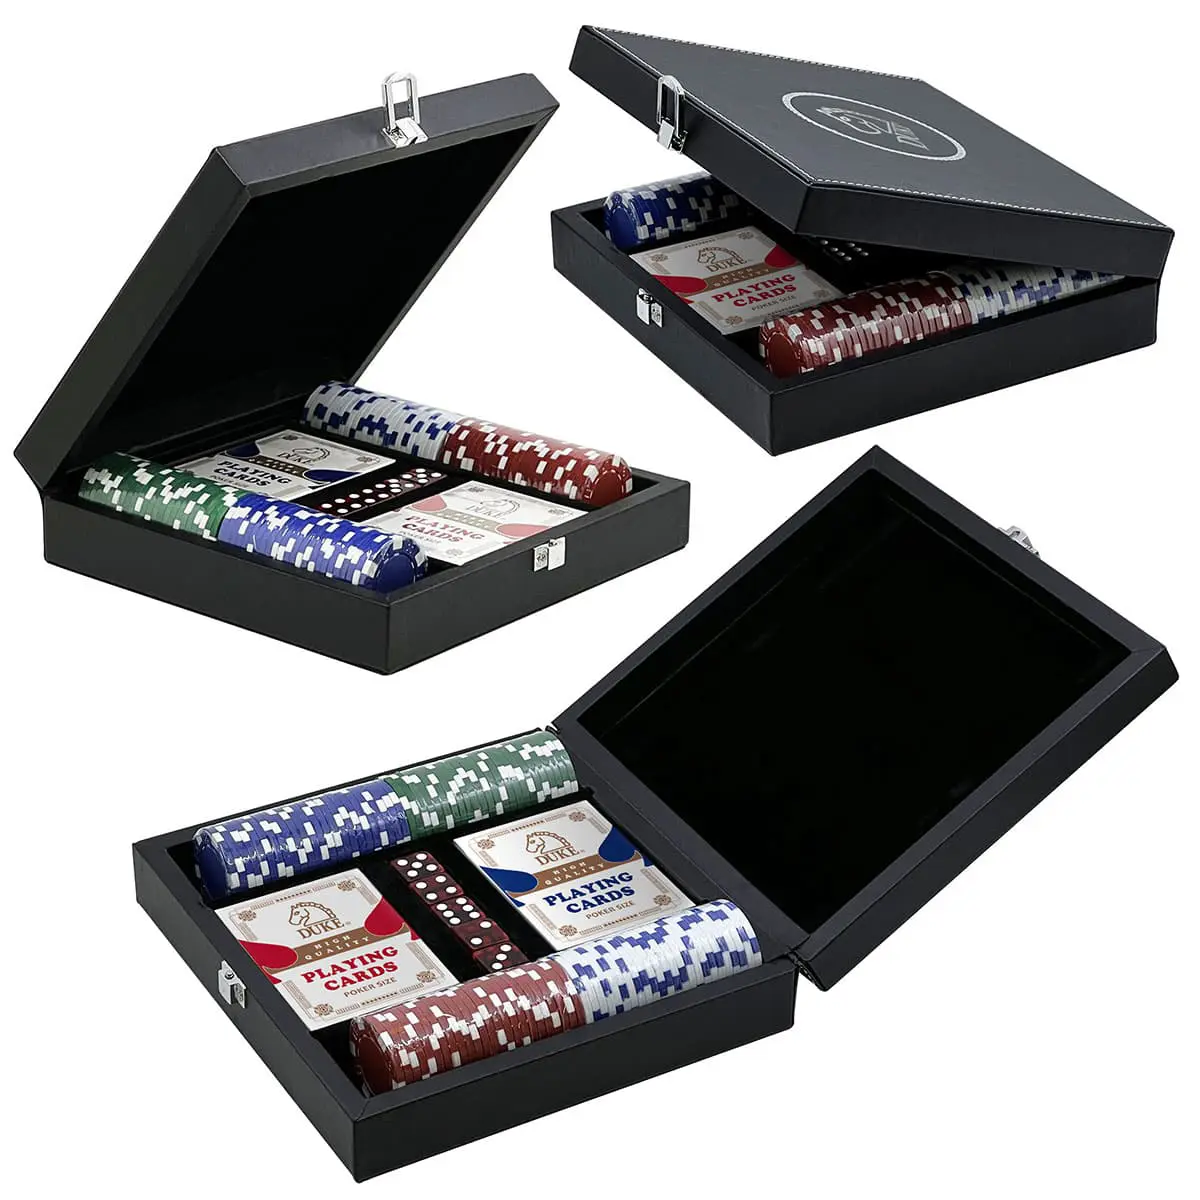 Pokerchip-Spielset in Ledertasche - 100-teilig